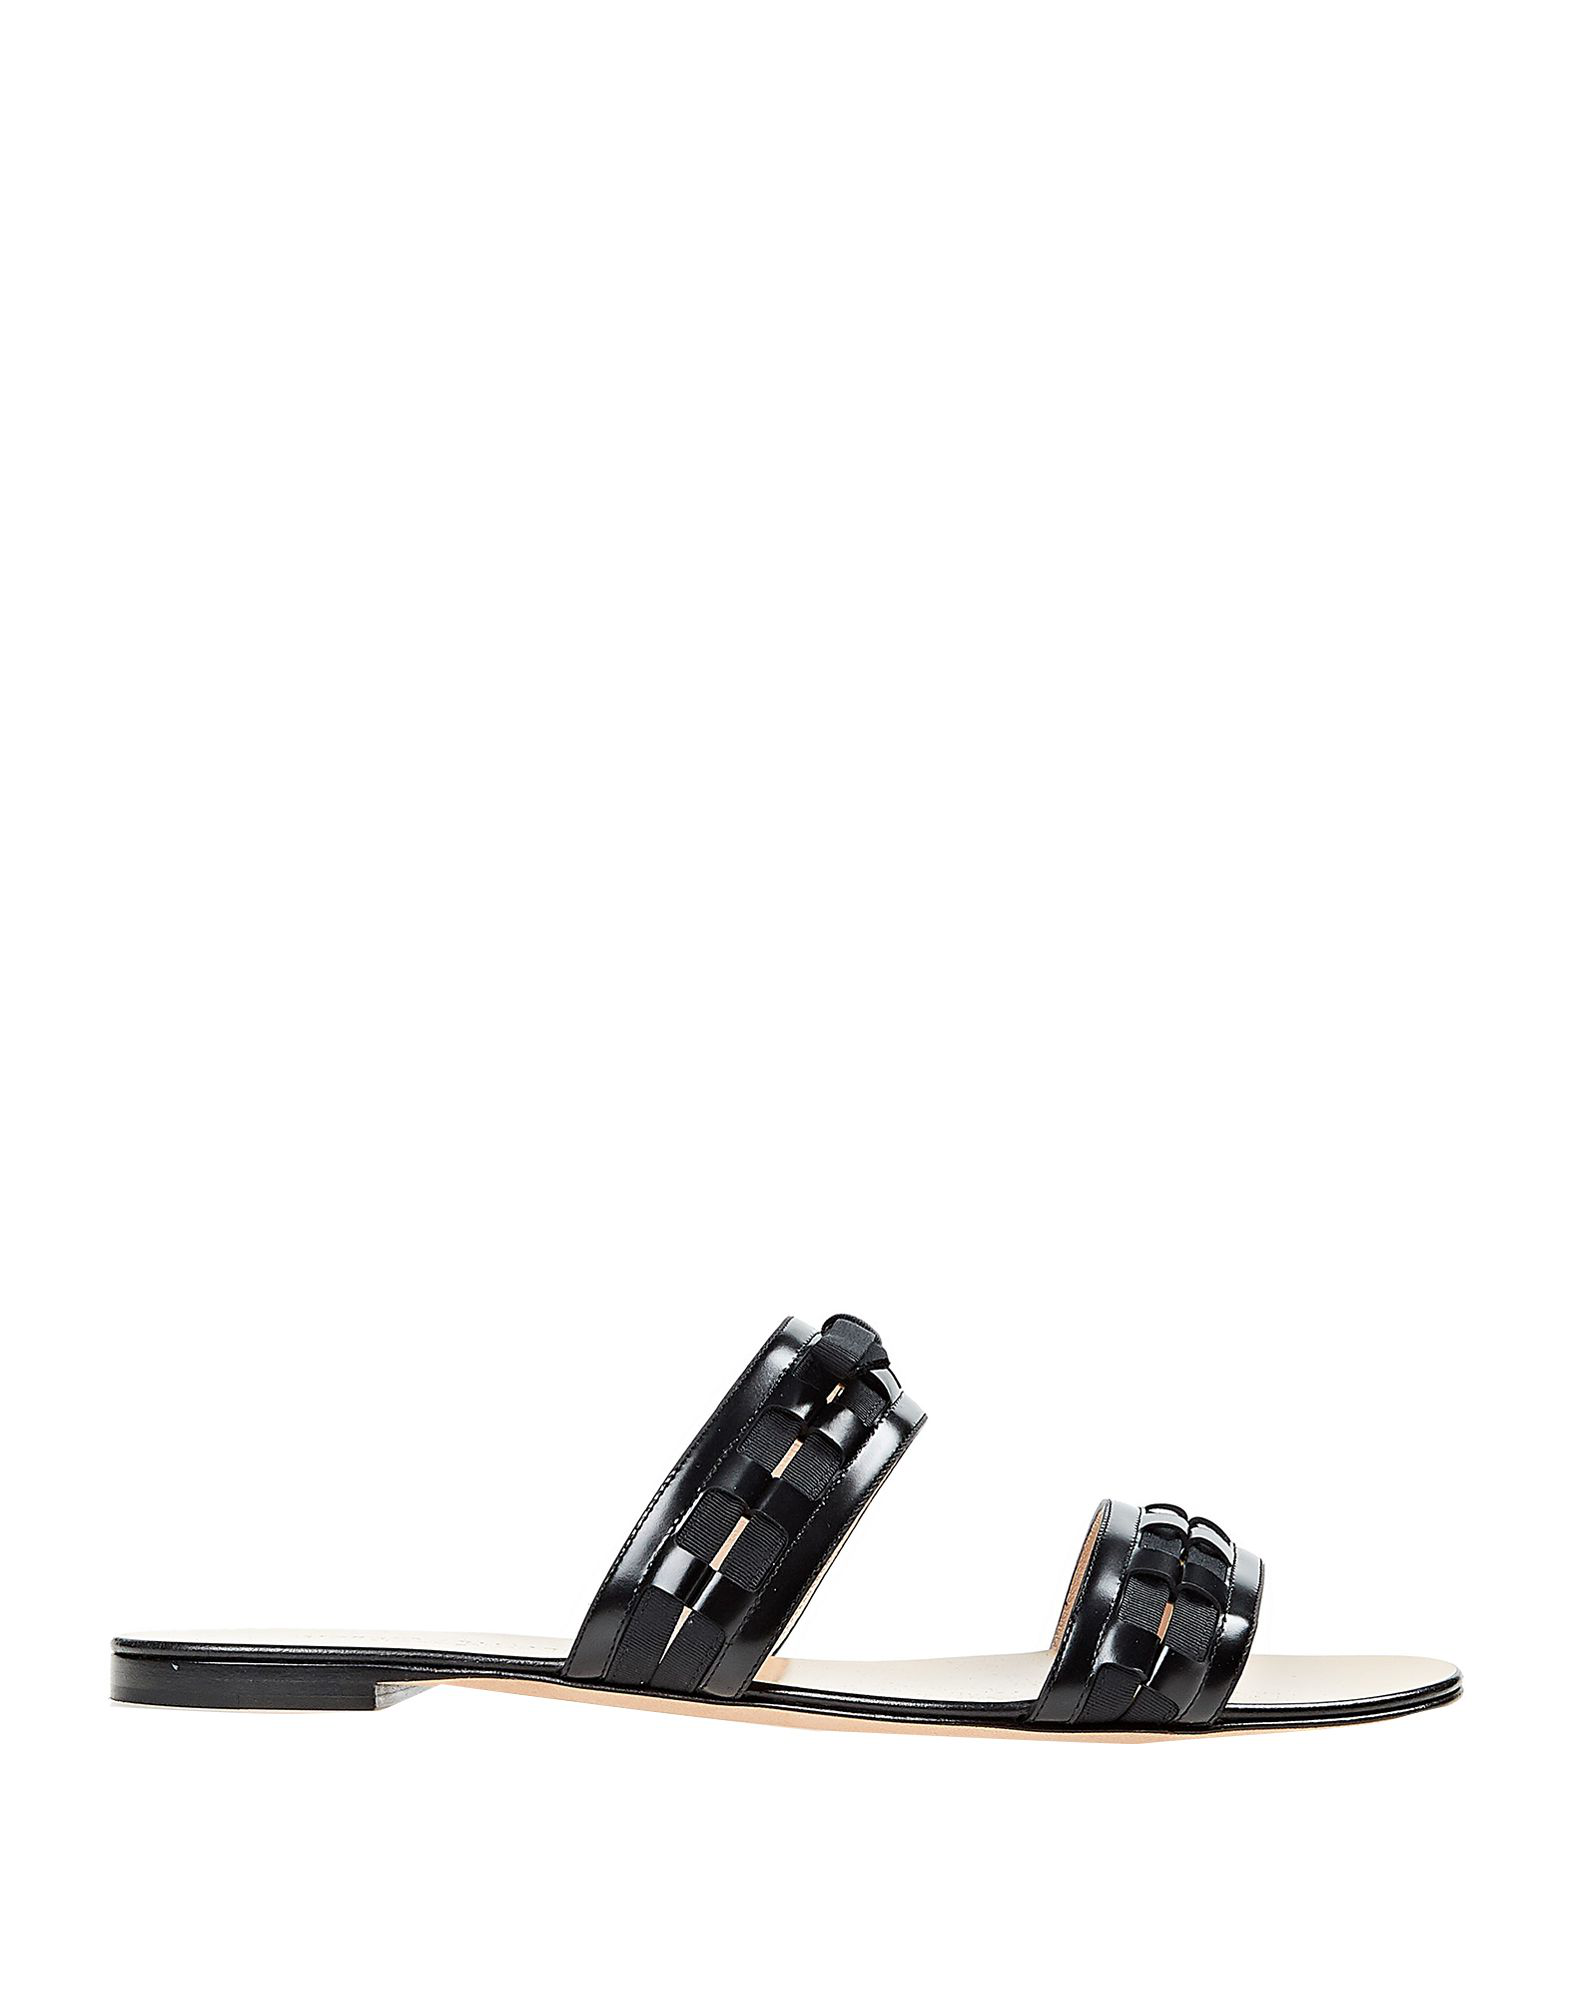 Giorgio Armani Sandals In Black | ModeSens